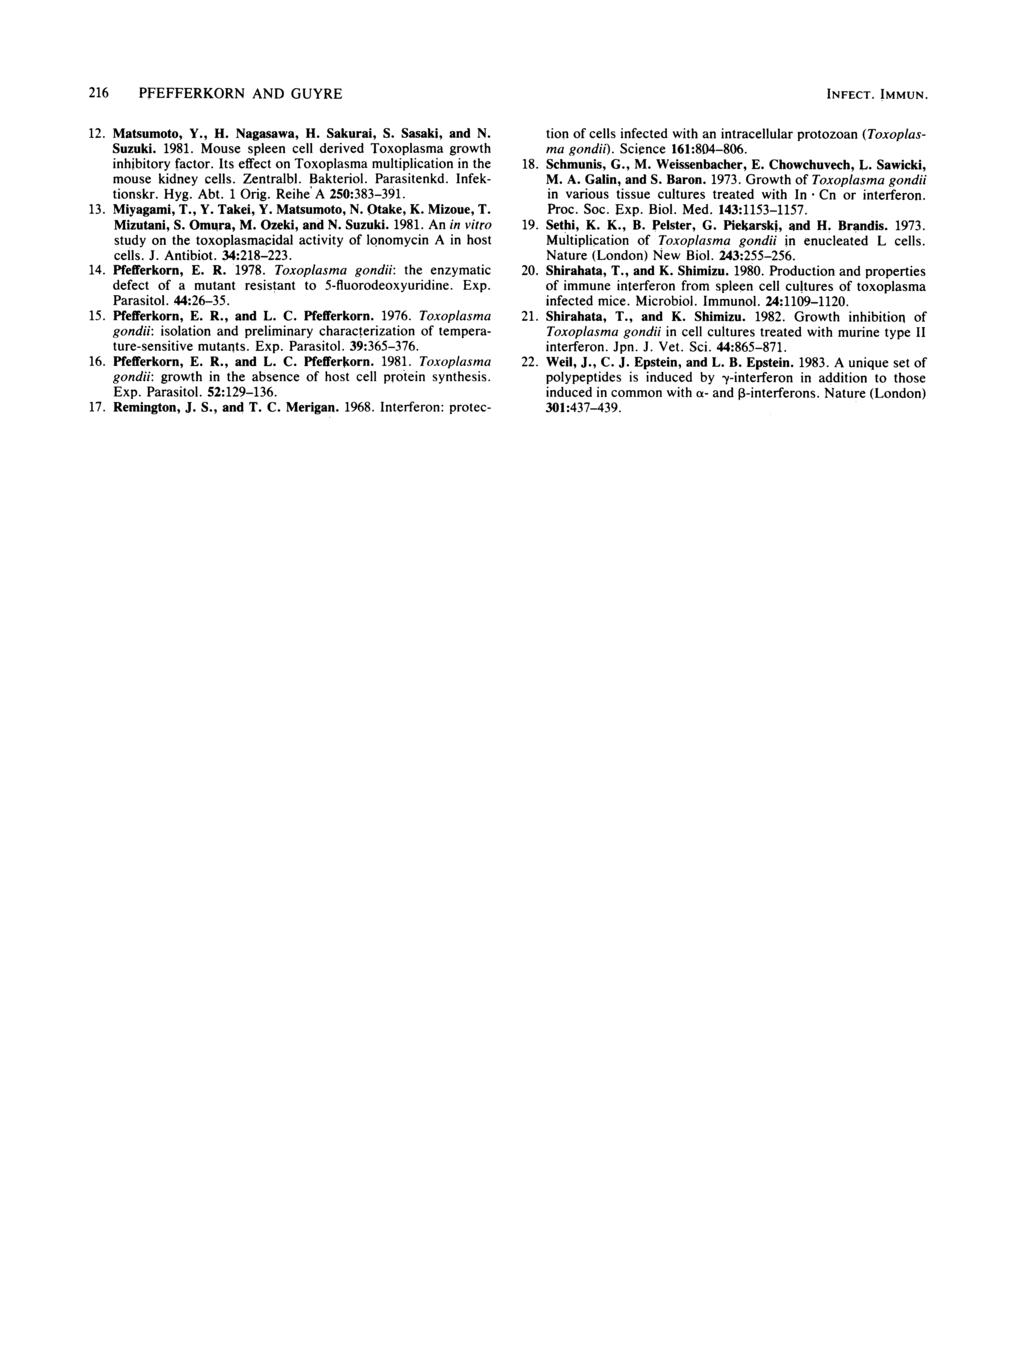 216 PFEFFERKORN AND GUYRE 12. Matsumoto, Y., H. Nagasawa, H. Sakurai, S. Sasaki, and N. Suzuki. 1981. Mouse spleen cell derived Toxoplasma growth inhibitory factor.